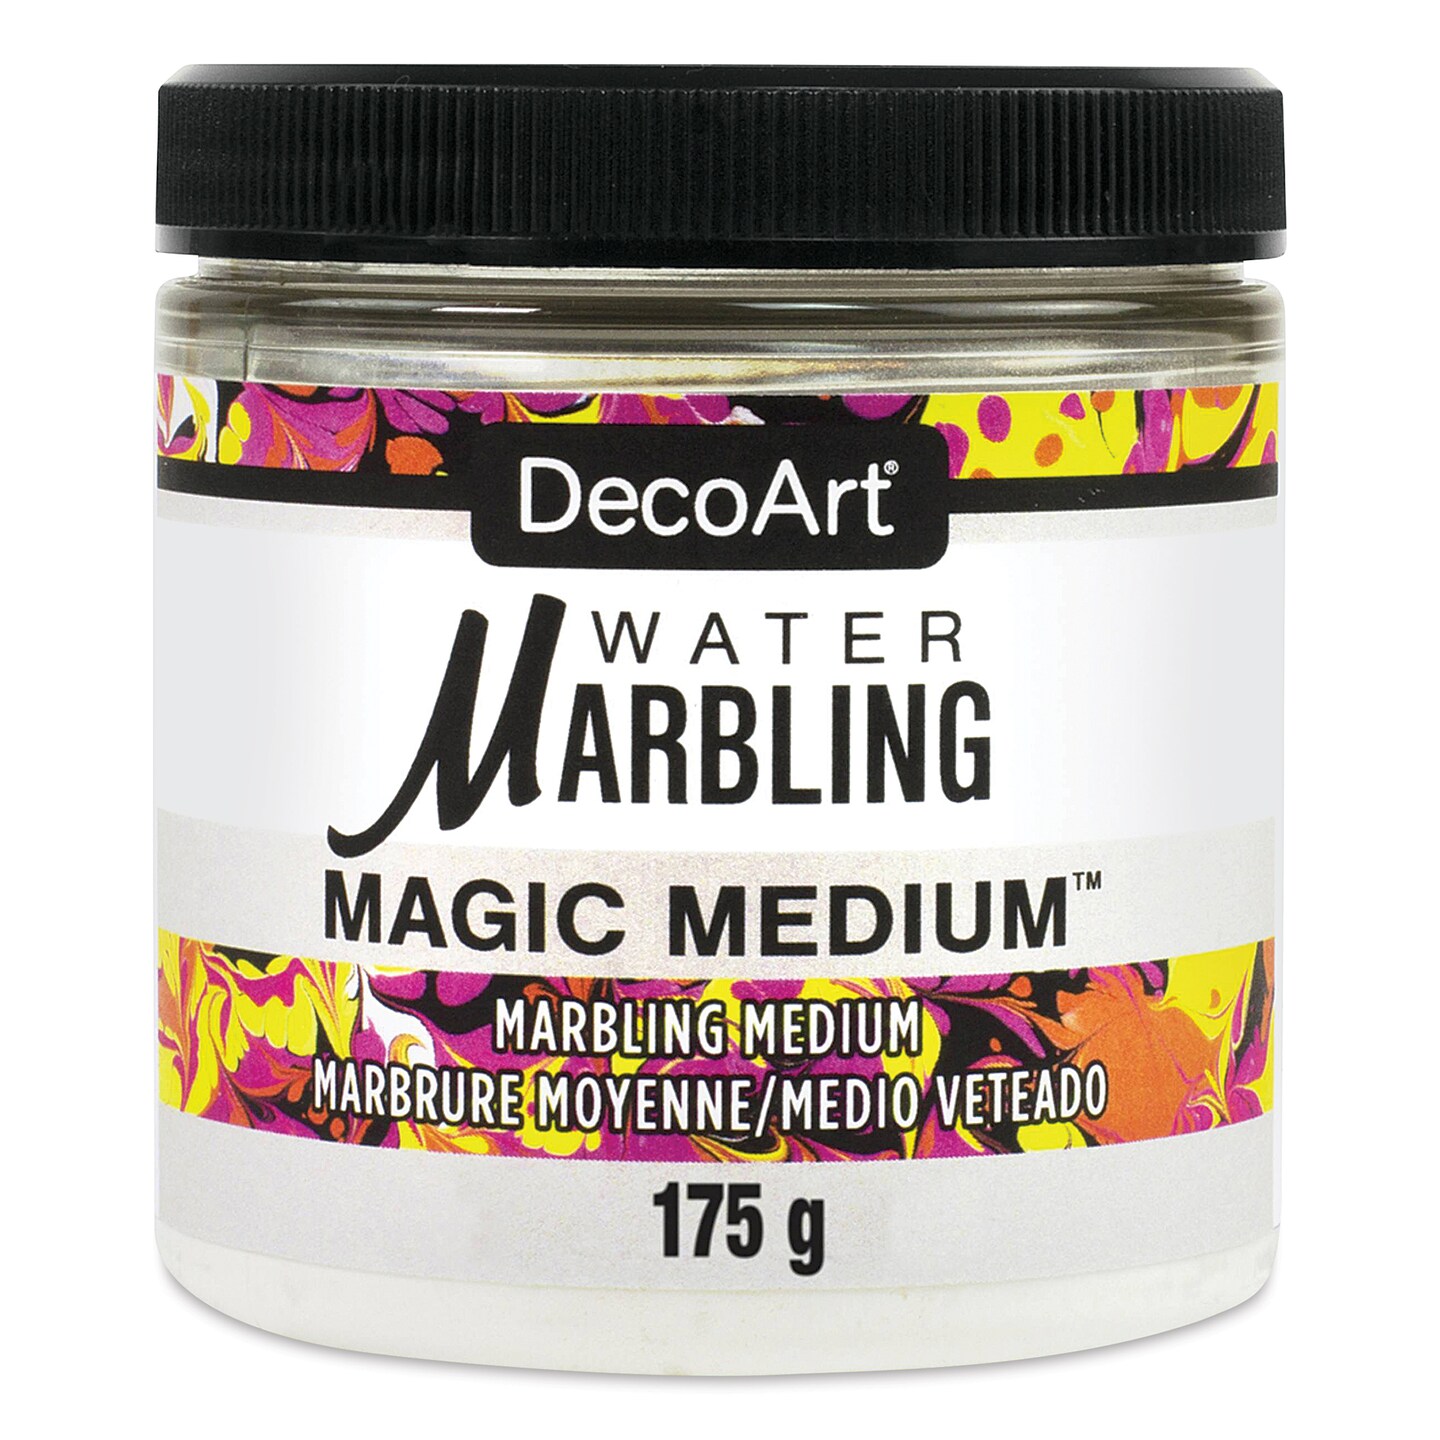 DecoArt Water Marbling Magic Medium - 6 oz jar